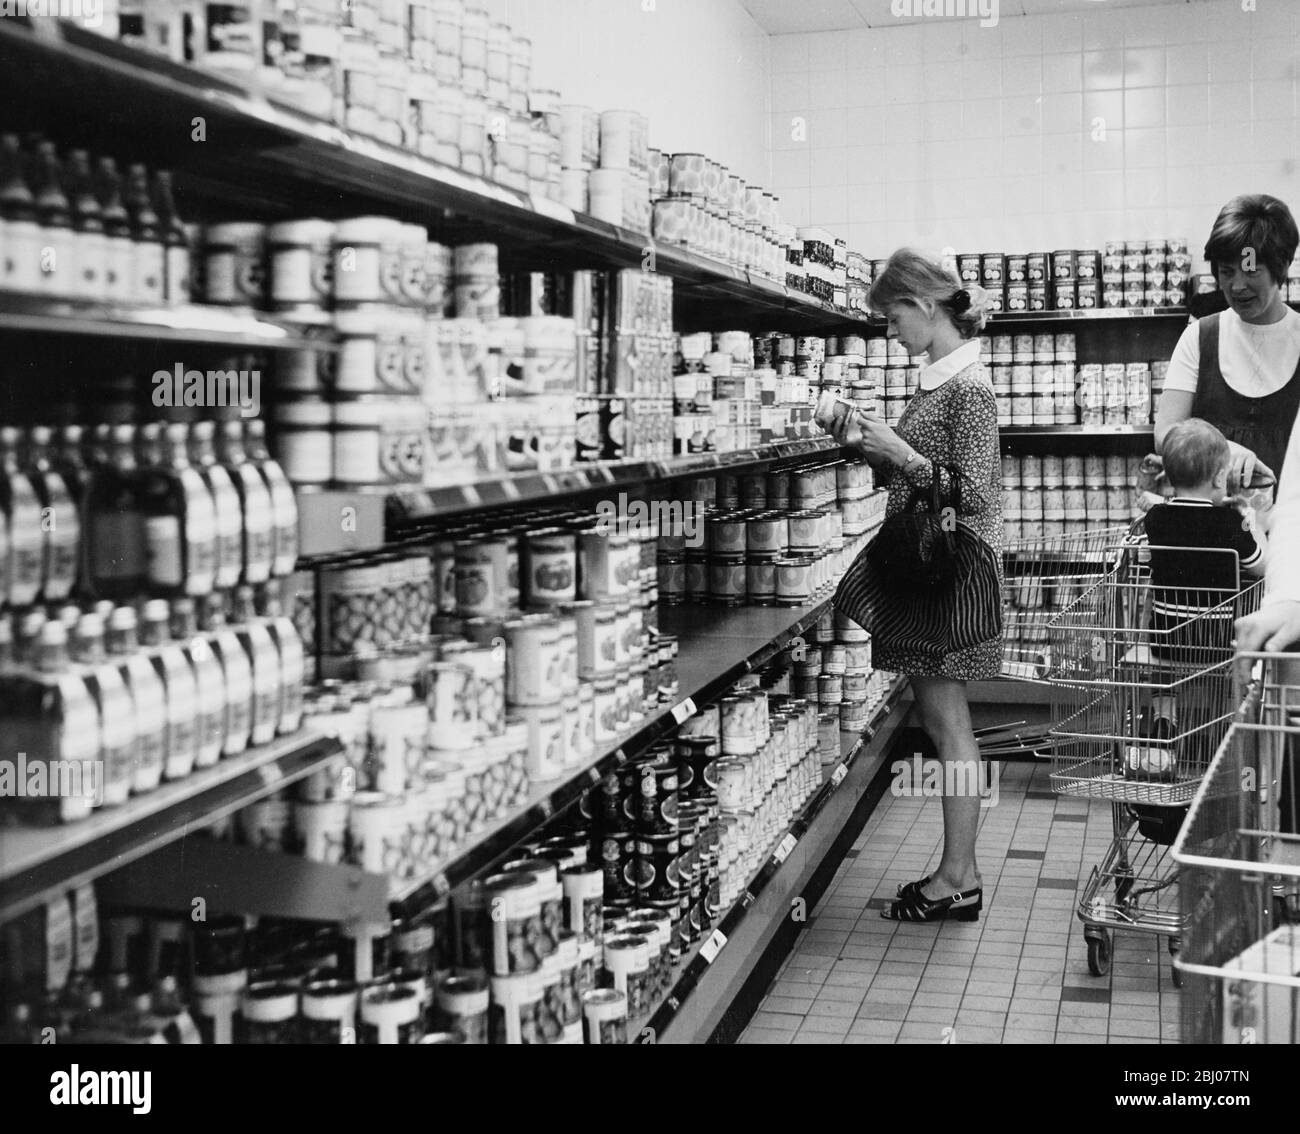 Selbstbedienungs-Supermarkt. - [Geschäfte, Geschäfte, Geschäfte, Lebensmittel, Frau, Einkaufswagen, 60er Jahre] Stockfoto